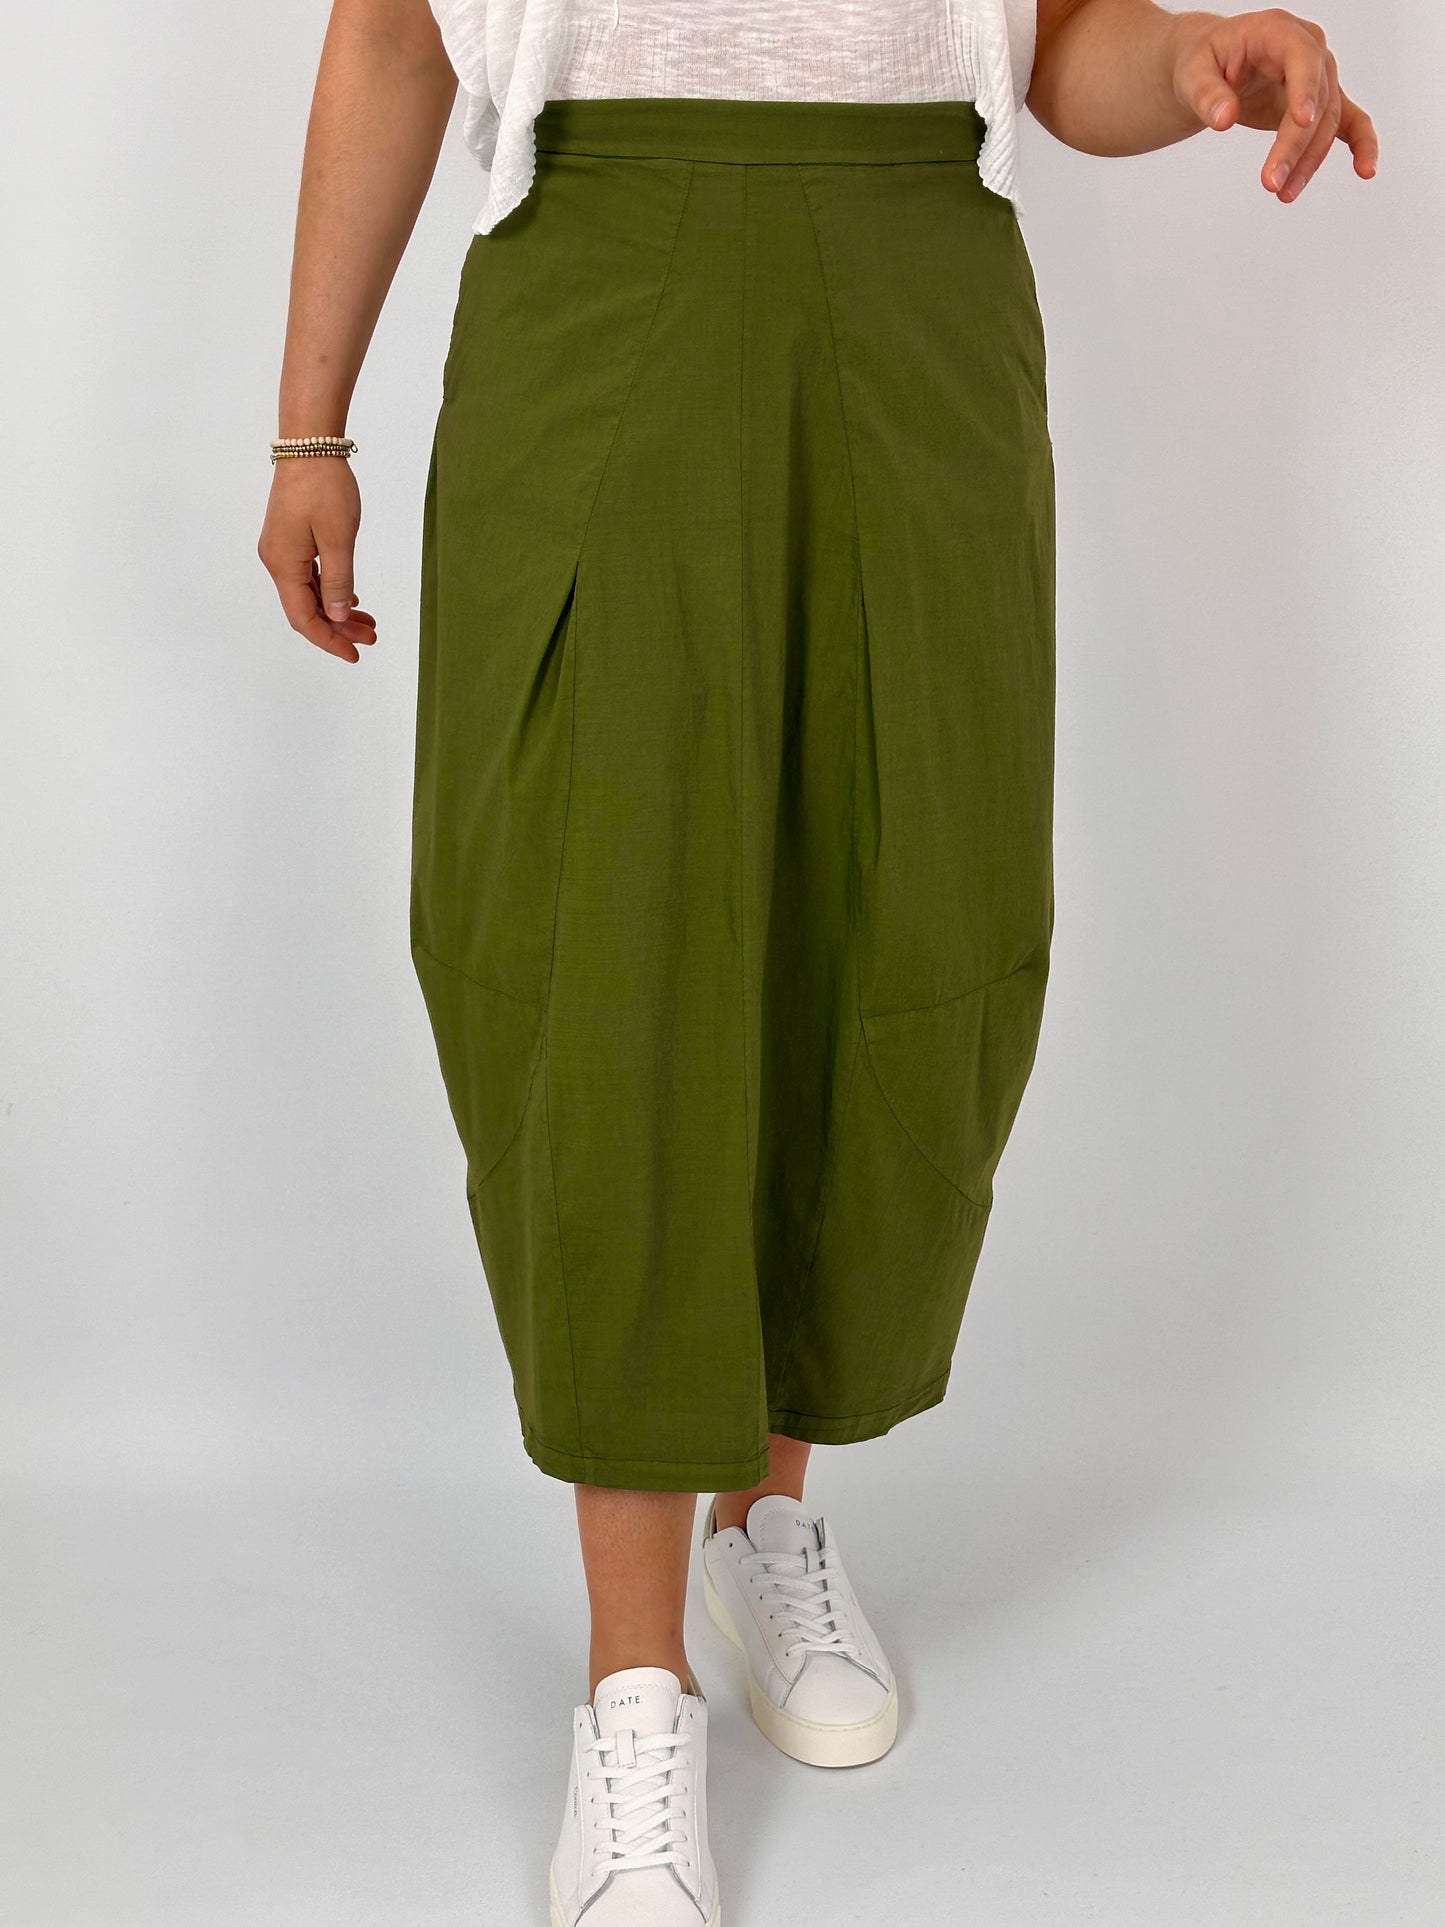 TPS M226 Skirt Green